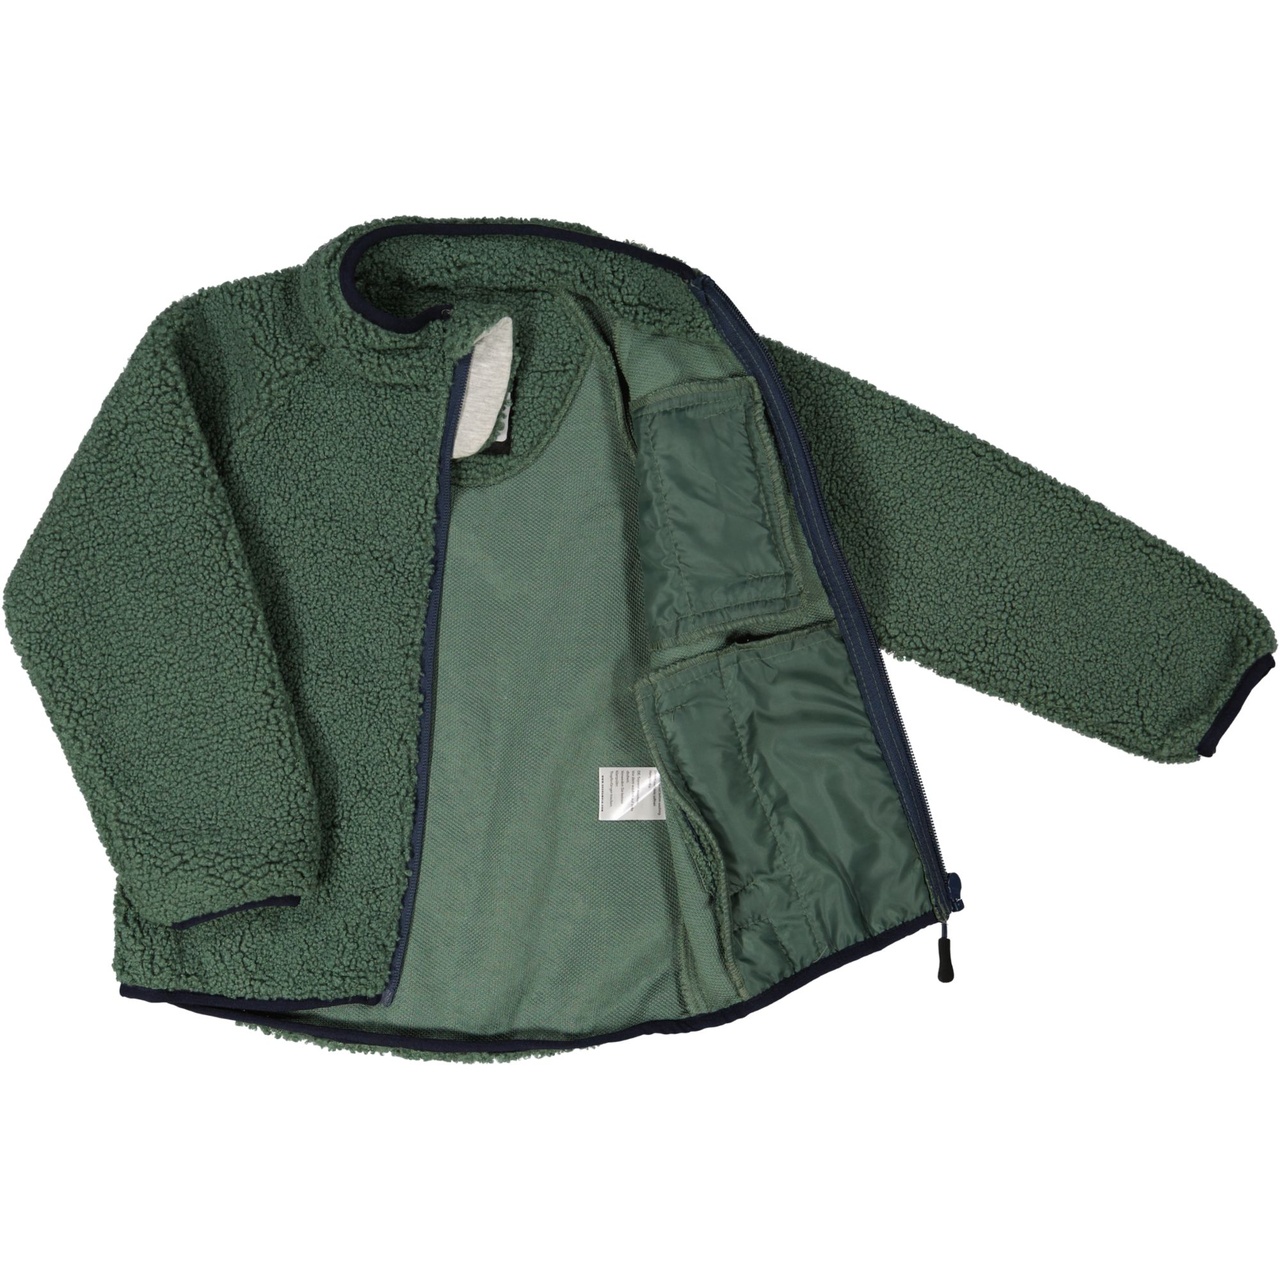 Pile jacket Moss green  146/152